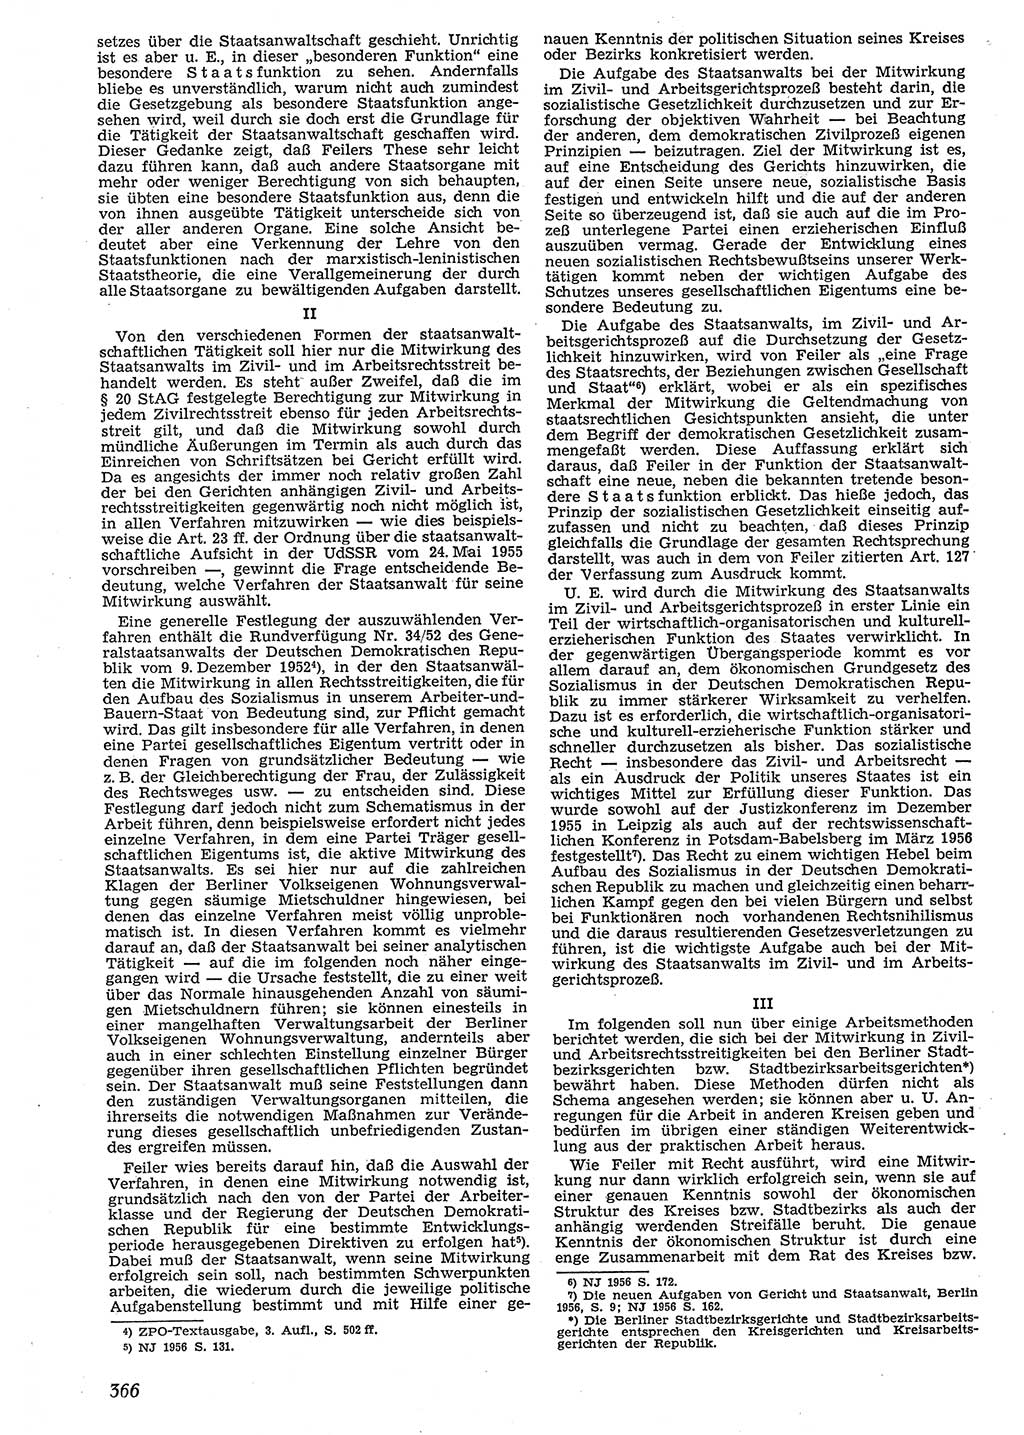 Neue Justiz (NJ), Zeitschrift für Recht und Rechtswissenschaft [Deutsche Demokratische Republik (DDR)], 10. Jahrgang 1956, Seite 366 (NJ DDR 1956, S. 366)